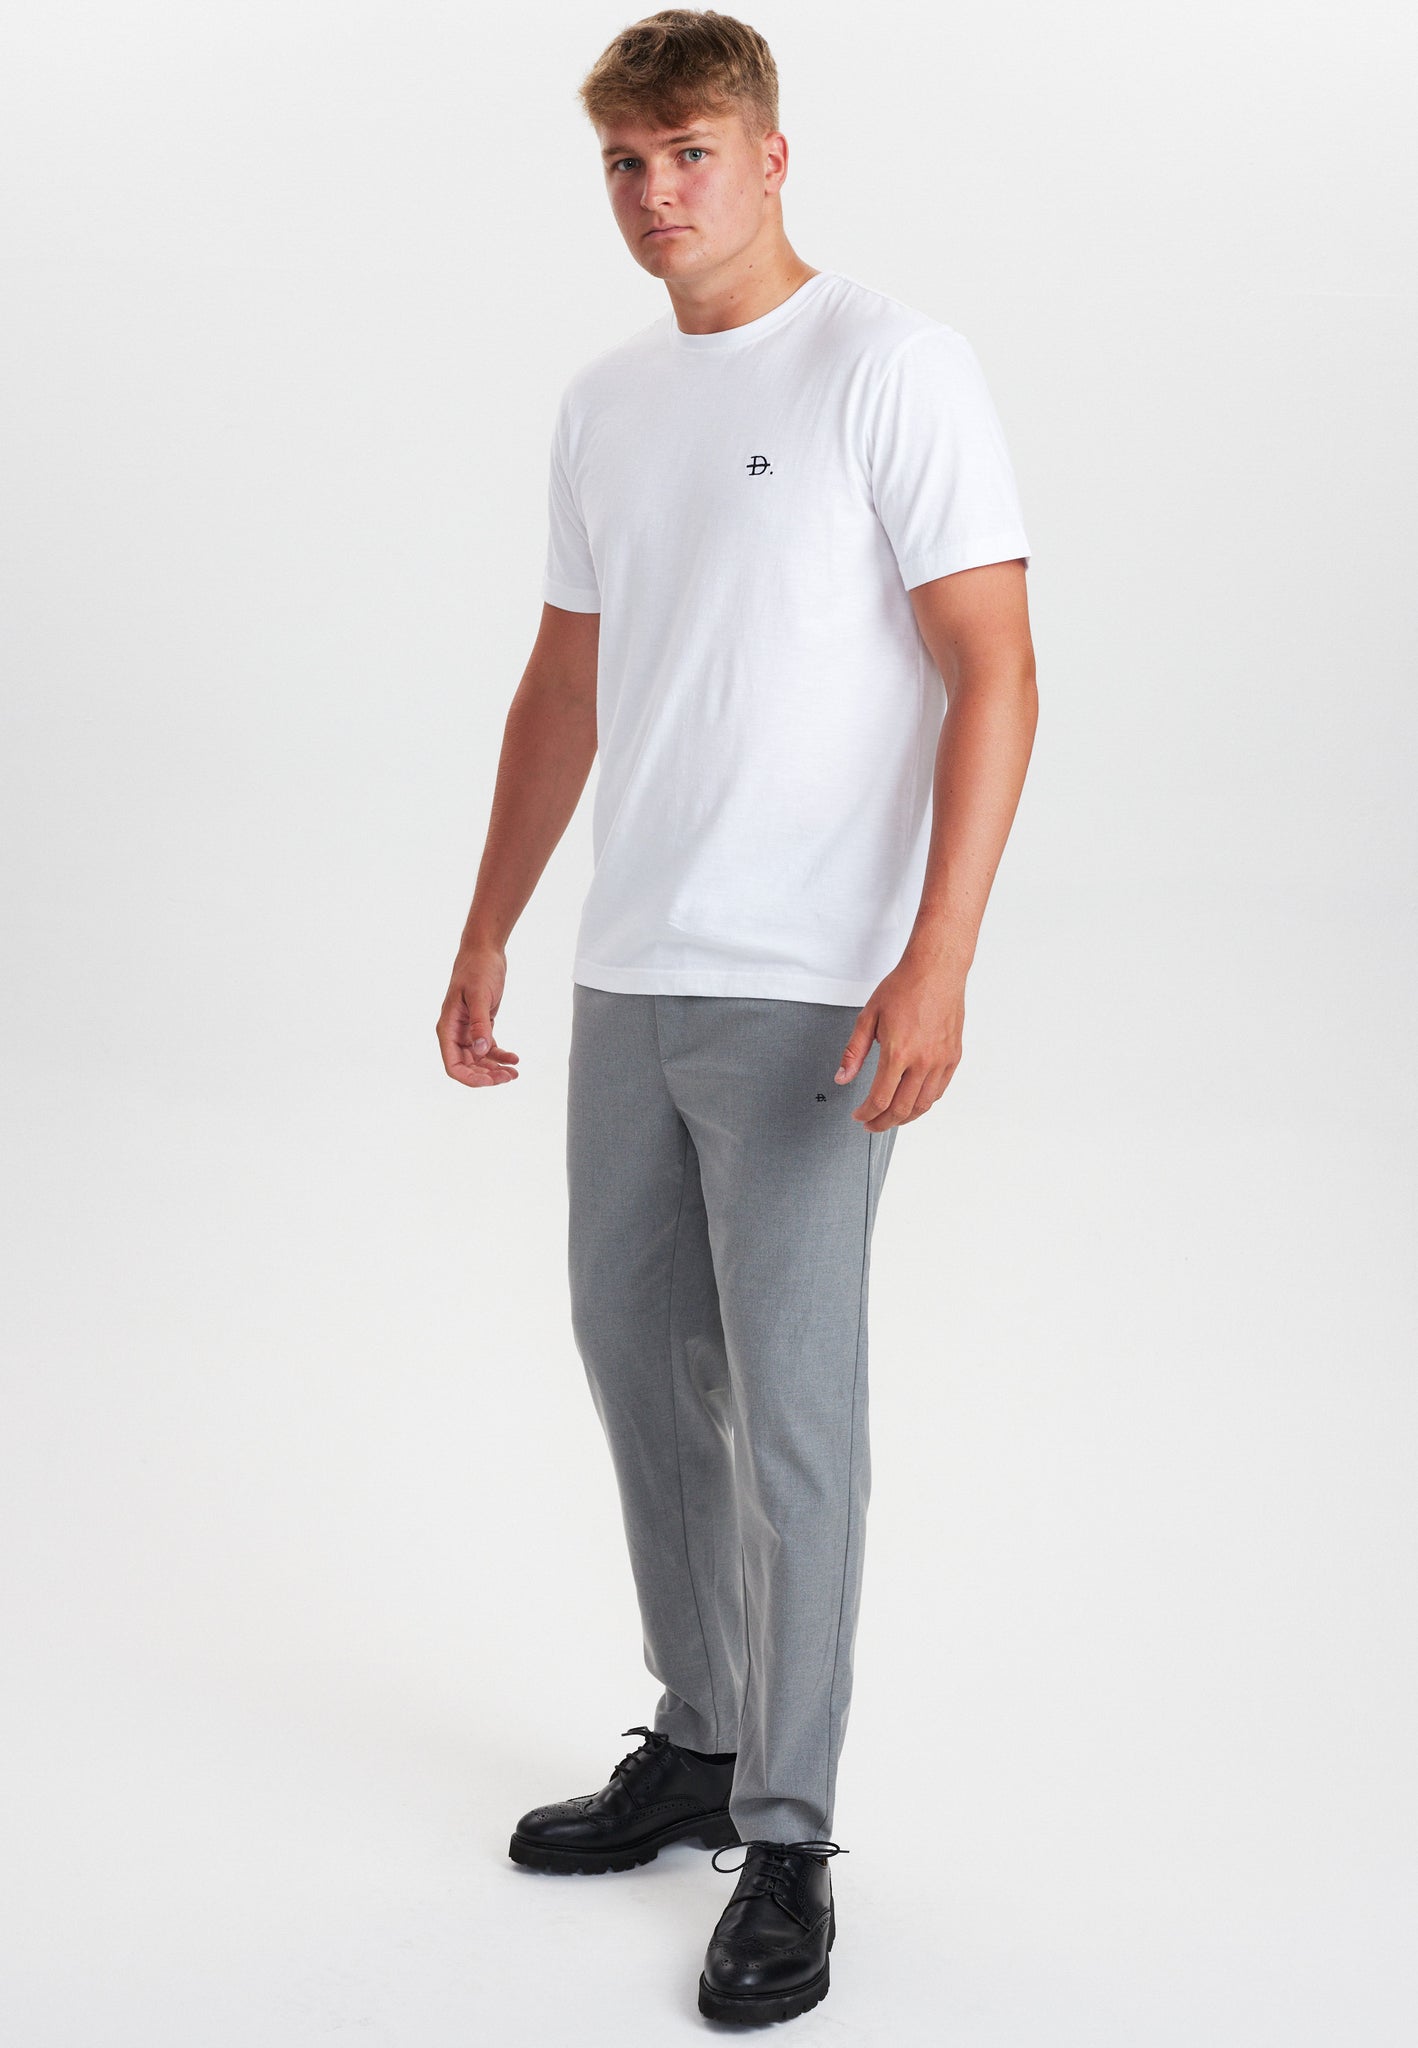 DXNMXRK. DX-Casper T-shirt White